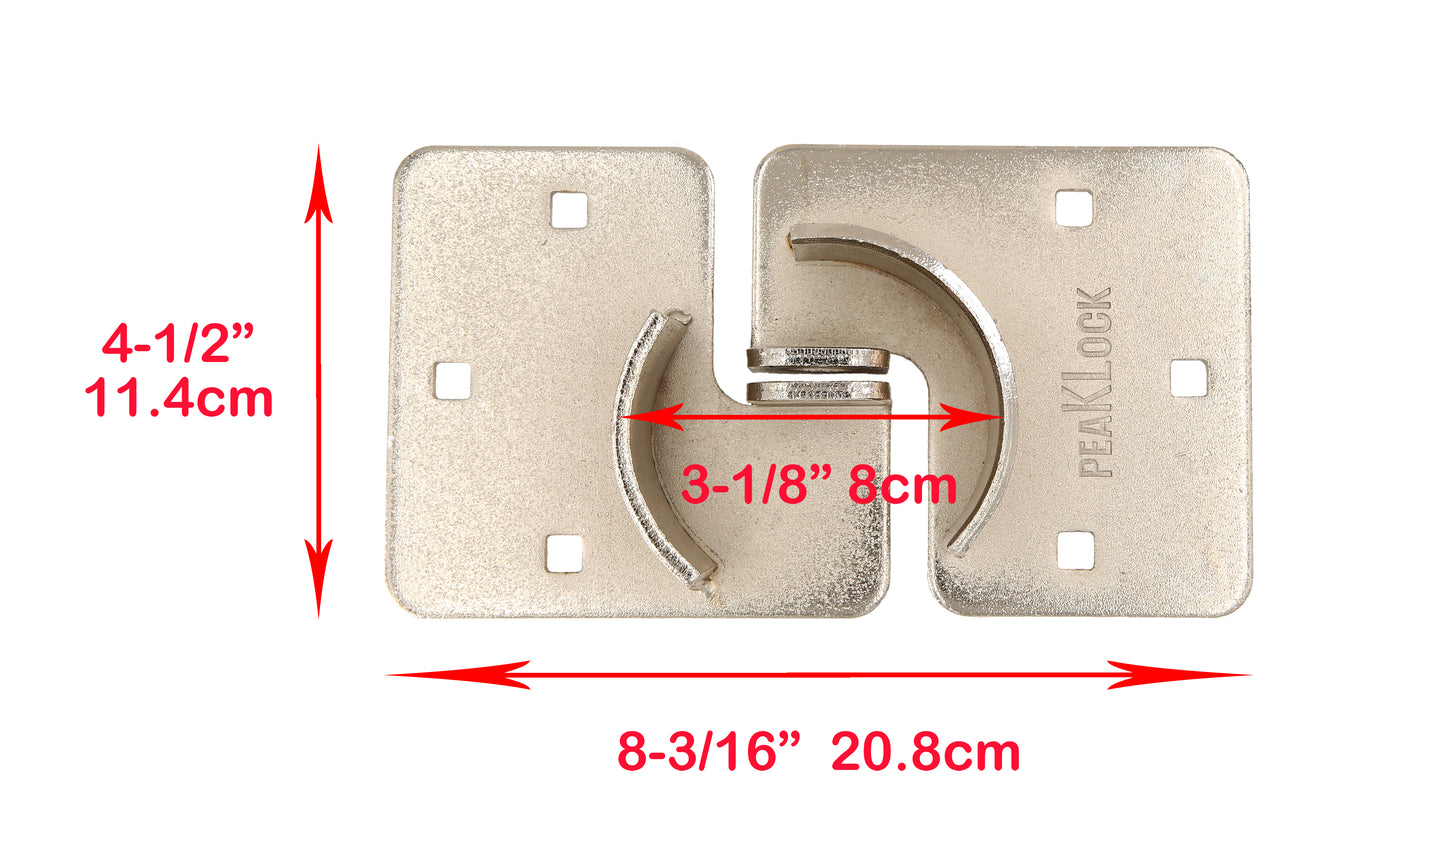 PLS0006 Moraillon haute sécurité robuste à clés identiques avec cadenas à anse cachée de 2-7/8" - Caisse de 8